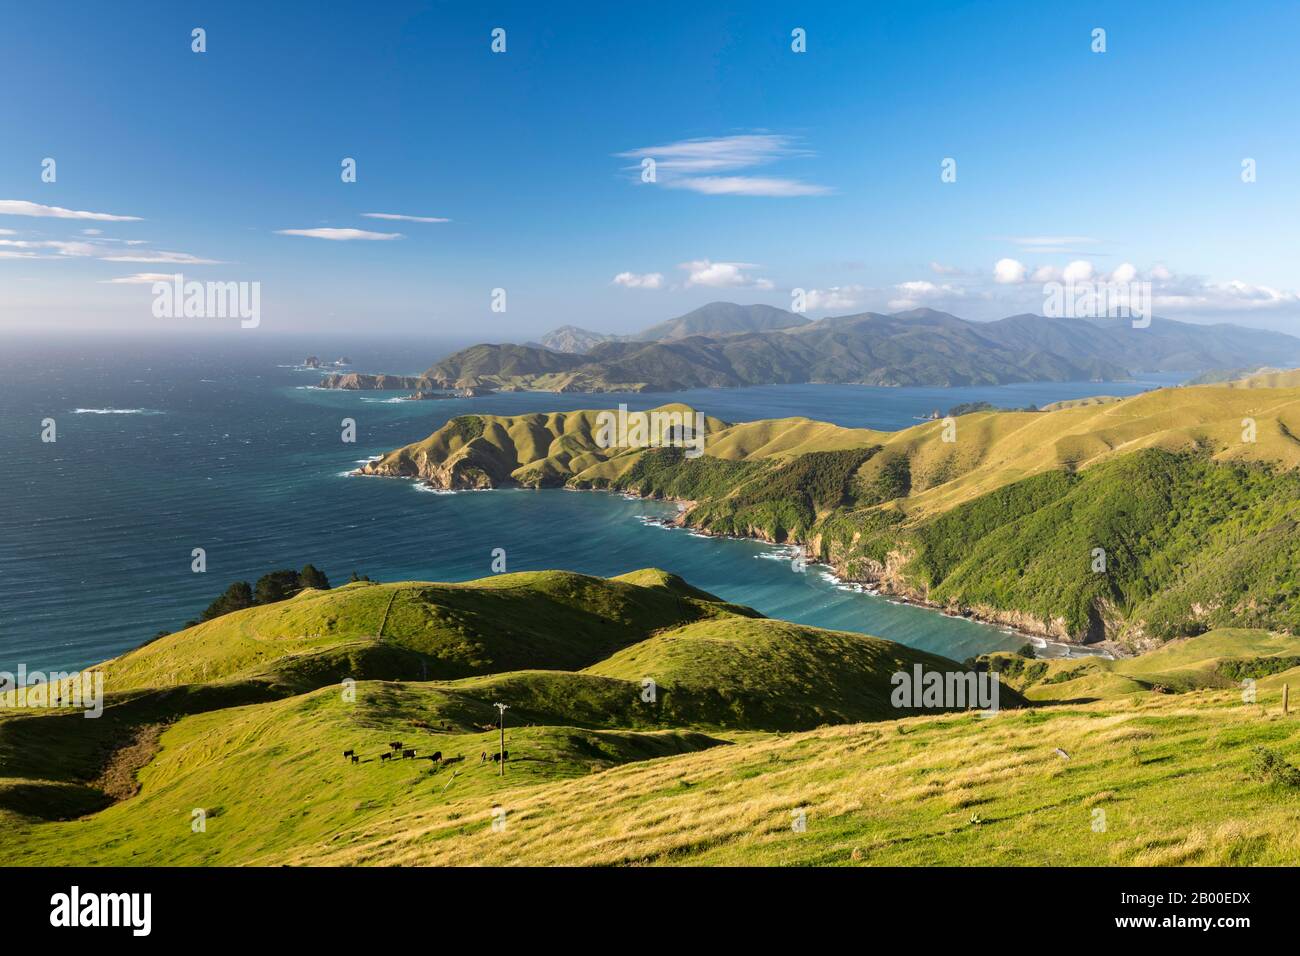 Blick auf Wiesen und felsigen Küste bei französischen Pass, Region Marlborough Sounds, Picton, Marlborough, Südinsel, Neuseeland Stockfoto